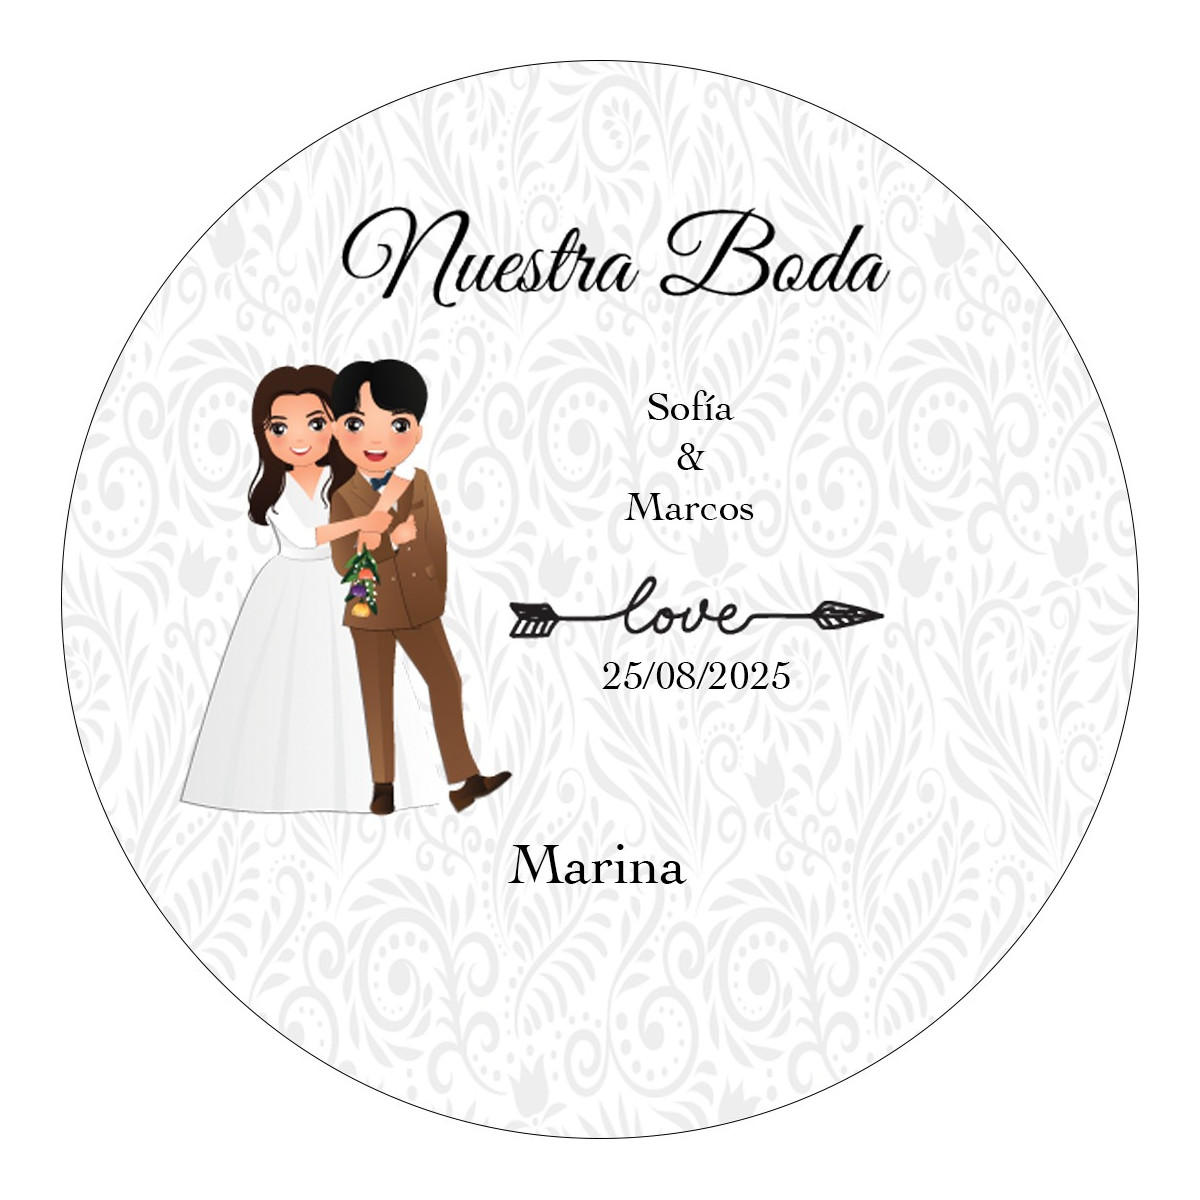 Sticker rond personnalisé avec le nom des invités et des mariés